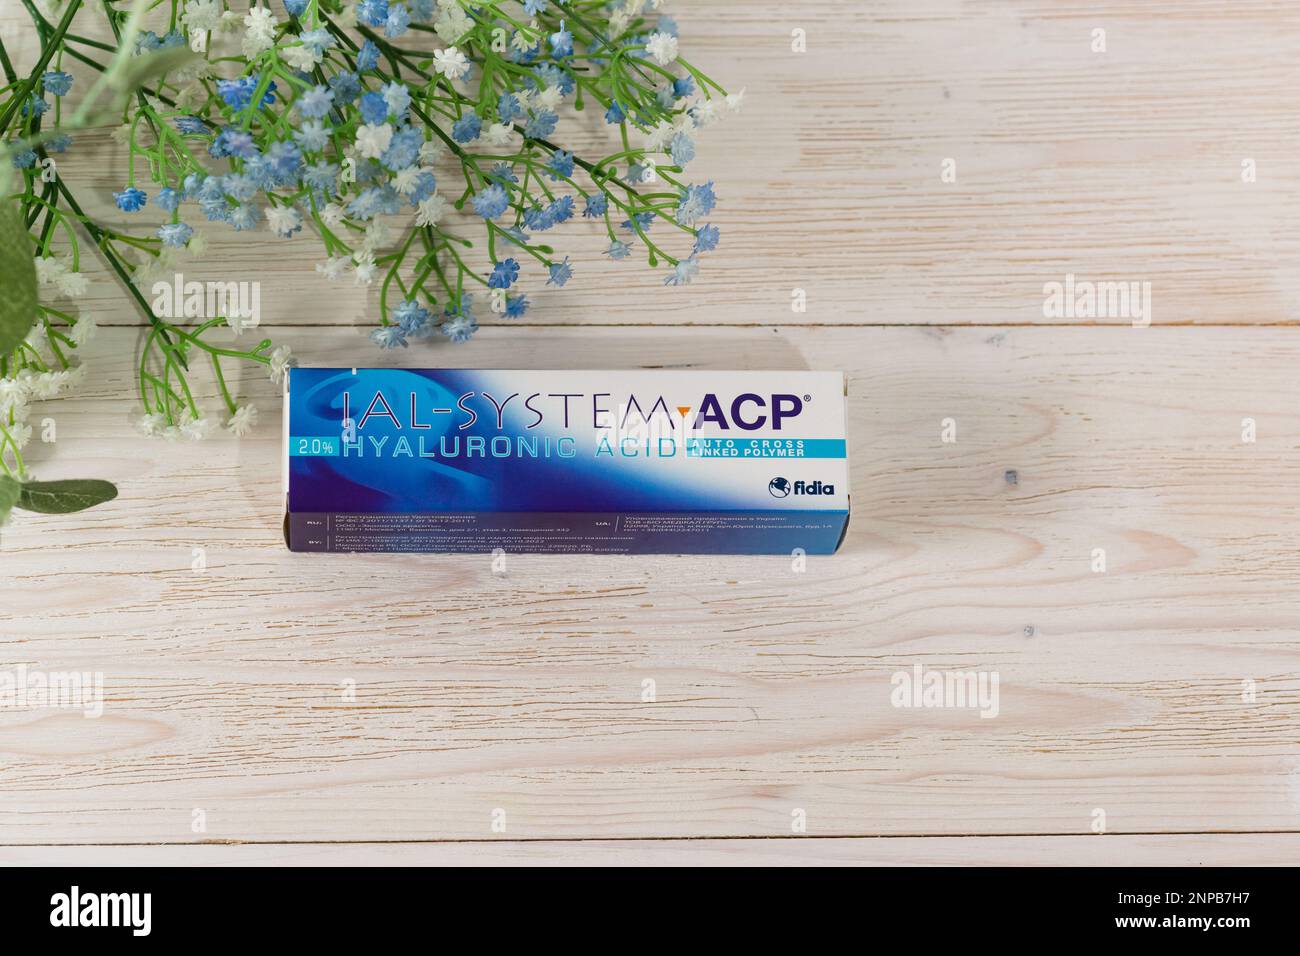 Russia, Krasnodar - 22 novembre 2022: Una scatola di preparazione cosmetica IAL-System ACP si trova su un tavolo di legno bianco. Copia spazio Foto Stock